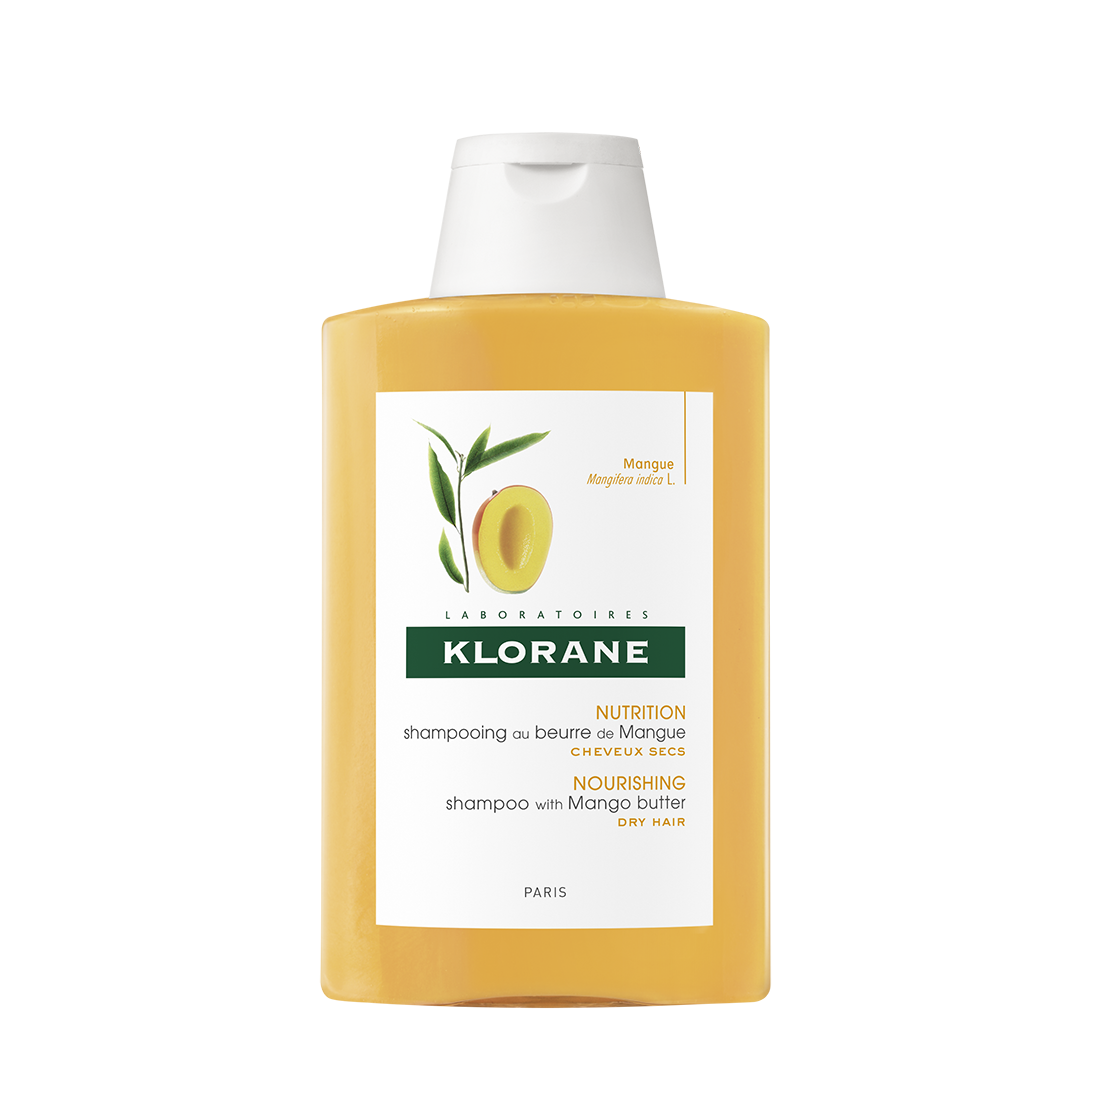 კლორანი - მანგოს  მშრალი თმის შამპუნი / Klorane - Shampoo with Mango butter